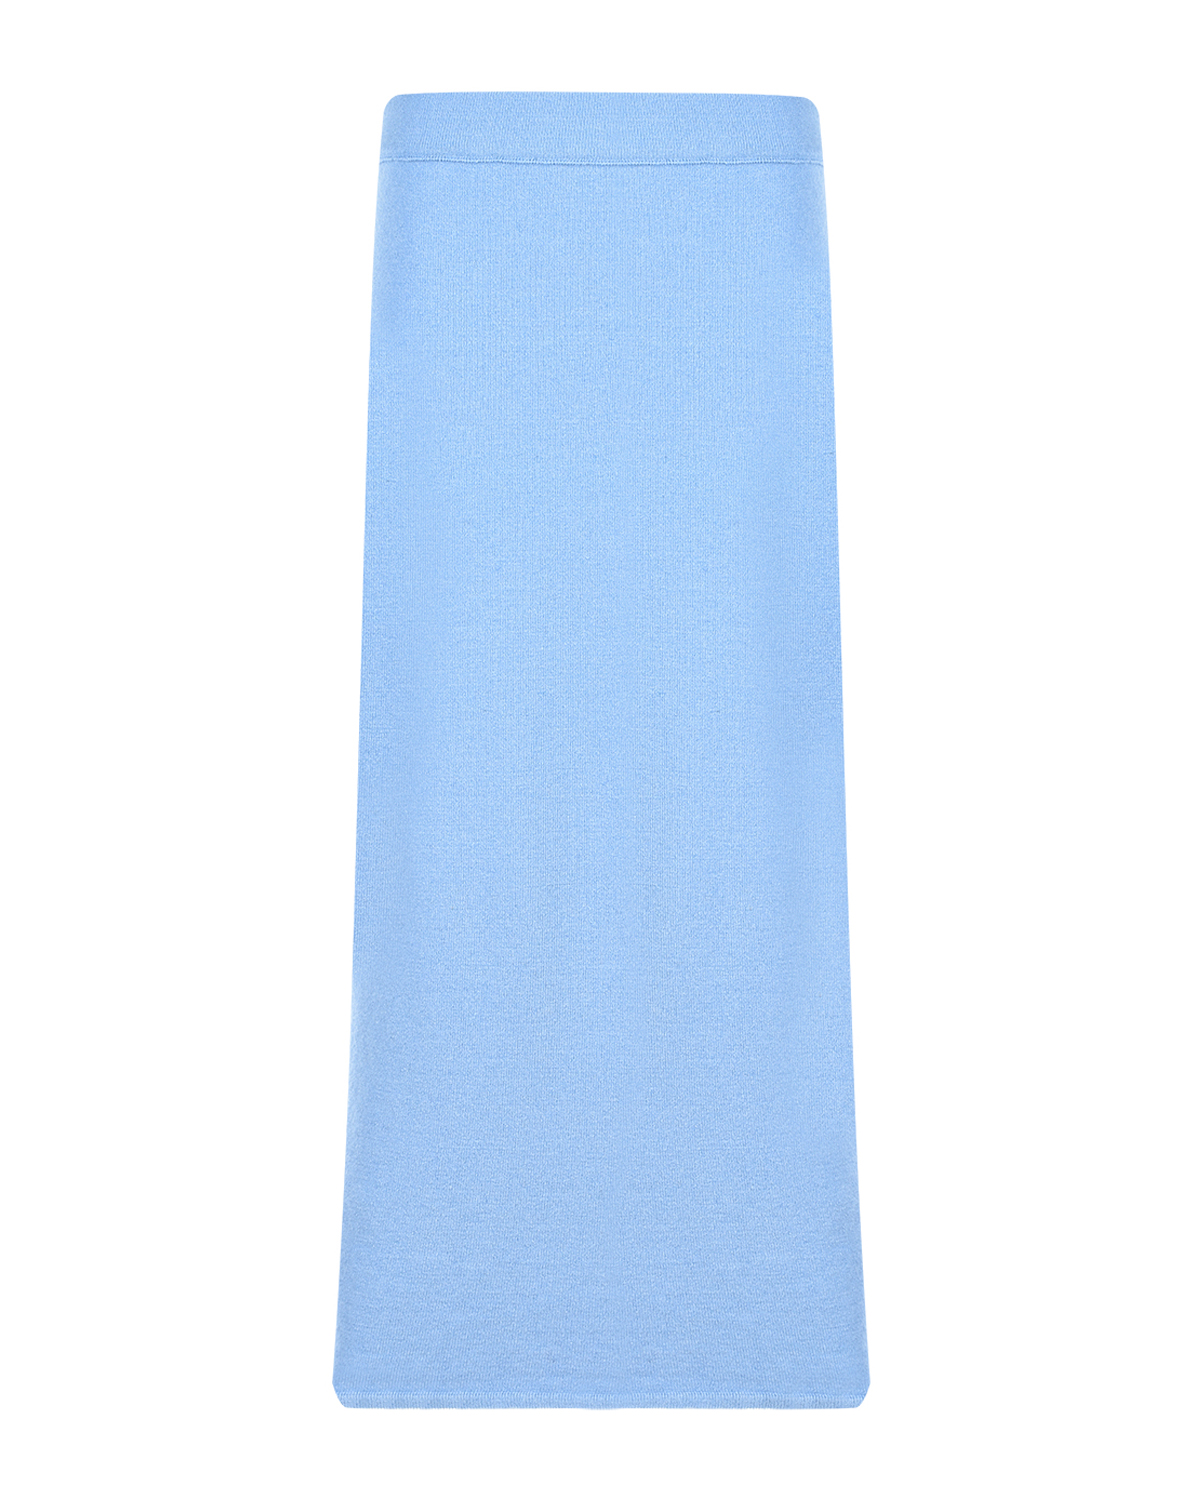 Голубая юбка-миди для беременных Gardena Pietro Brunelli, размер 42, цвет голубой - фото 1